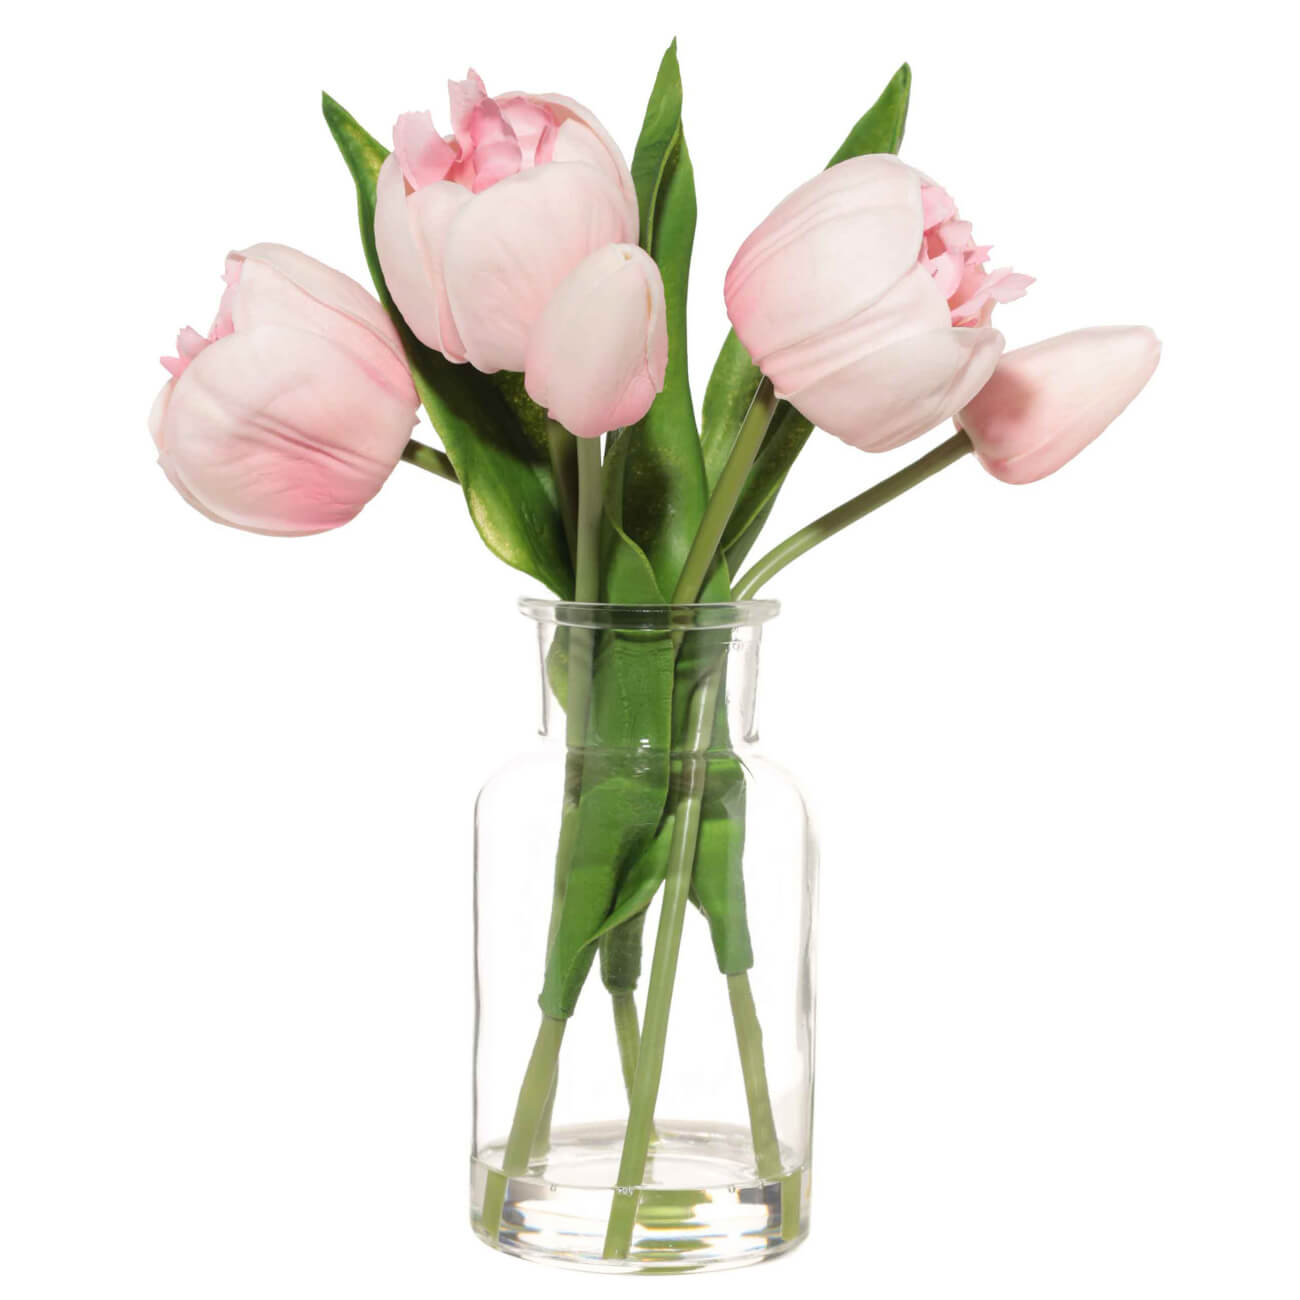 Букет искусственный, 21 см, в вазе, полиуретан/стекло, Розовые тюльпаны, Tulip garden матрёшка розовые ы 5 кукольная 14 см